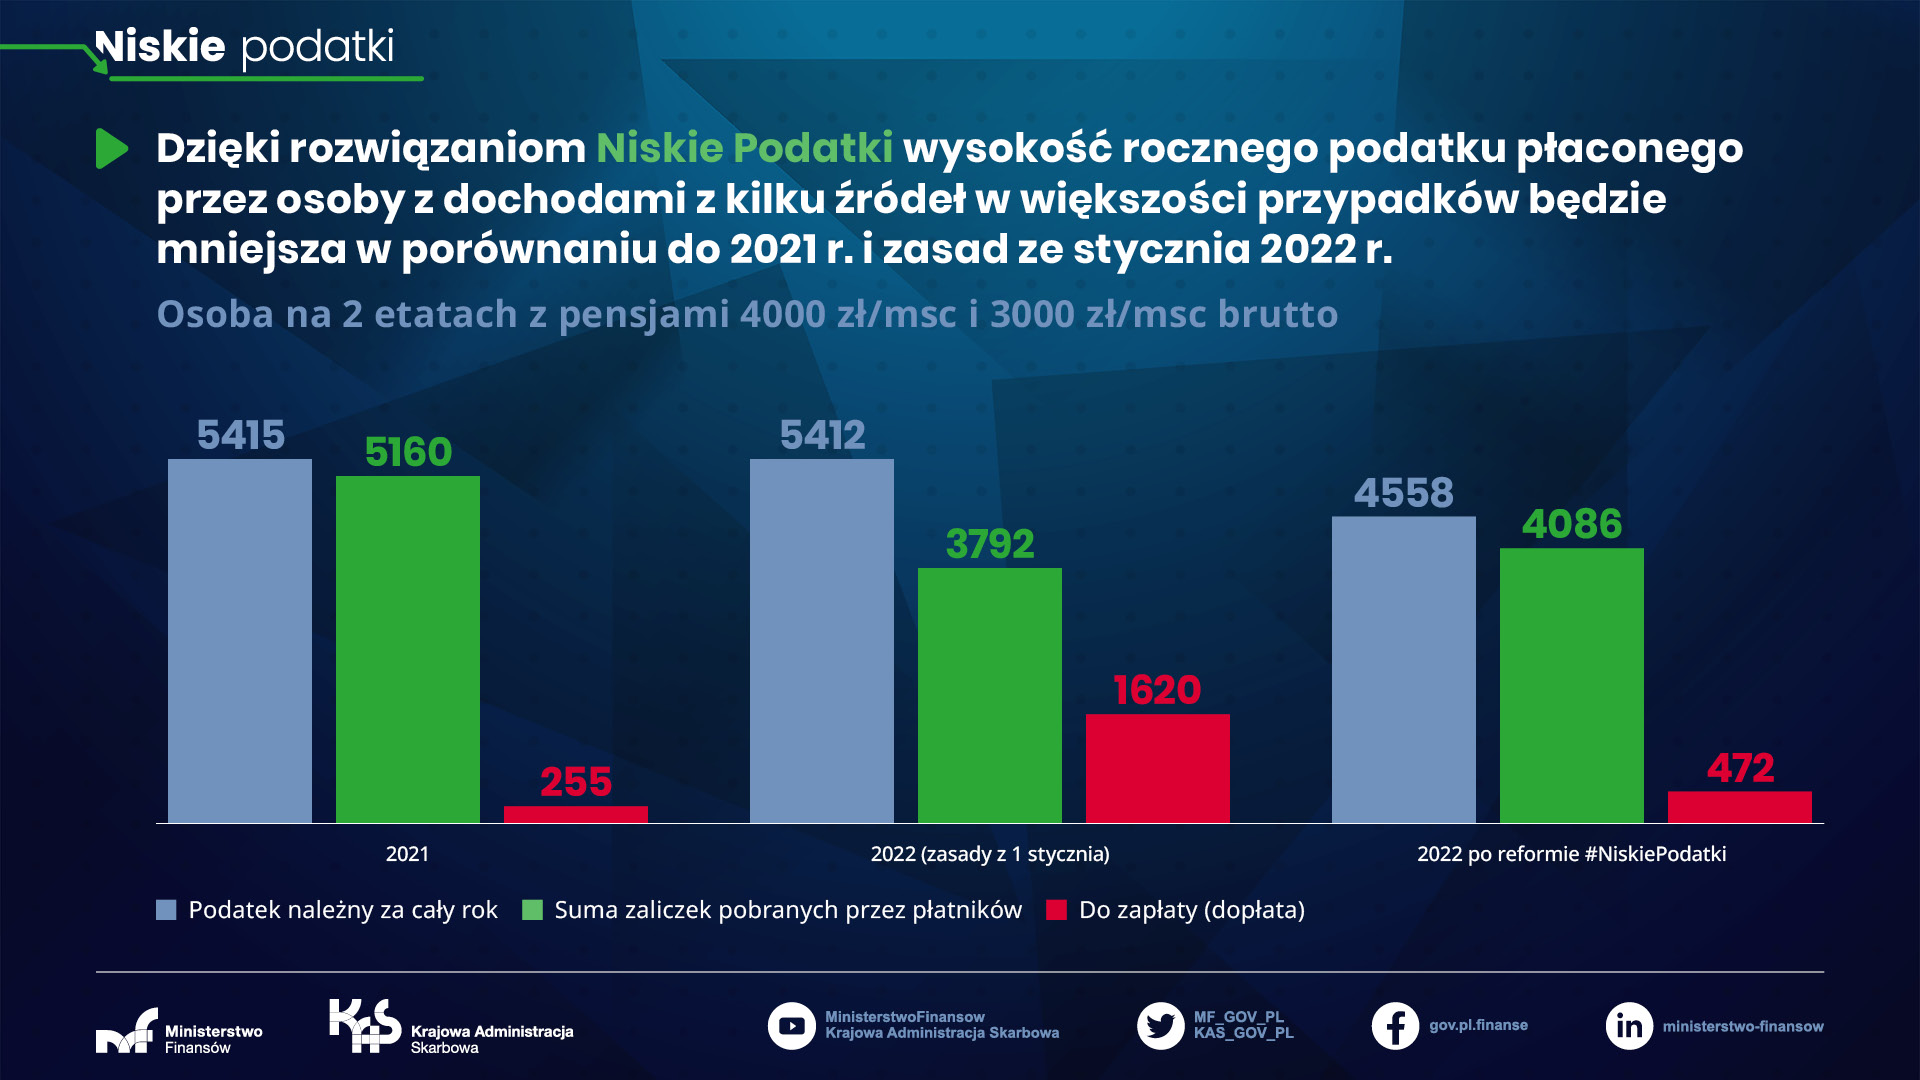 Niskie podatki - osoba na 2 etatach z pensjami 4000 zł/msc brutto